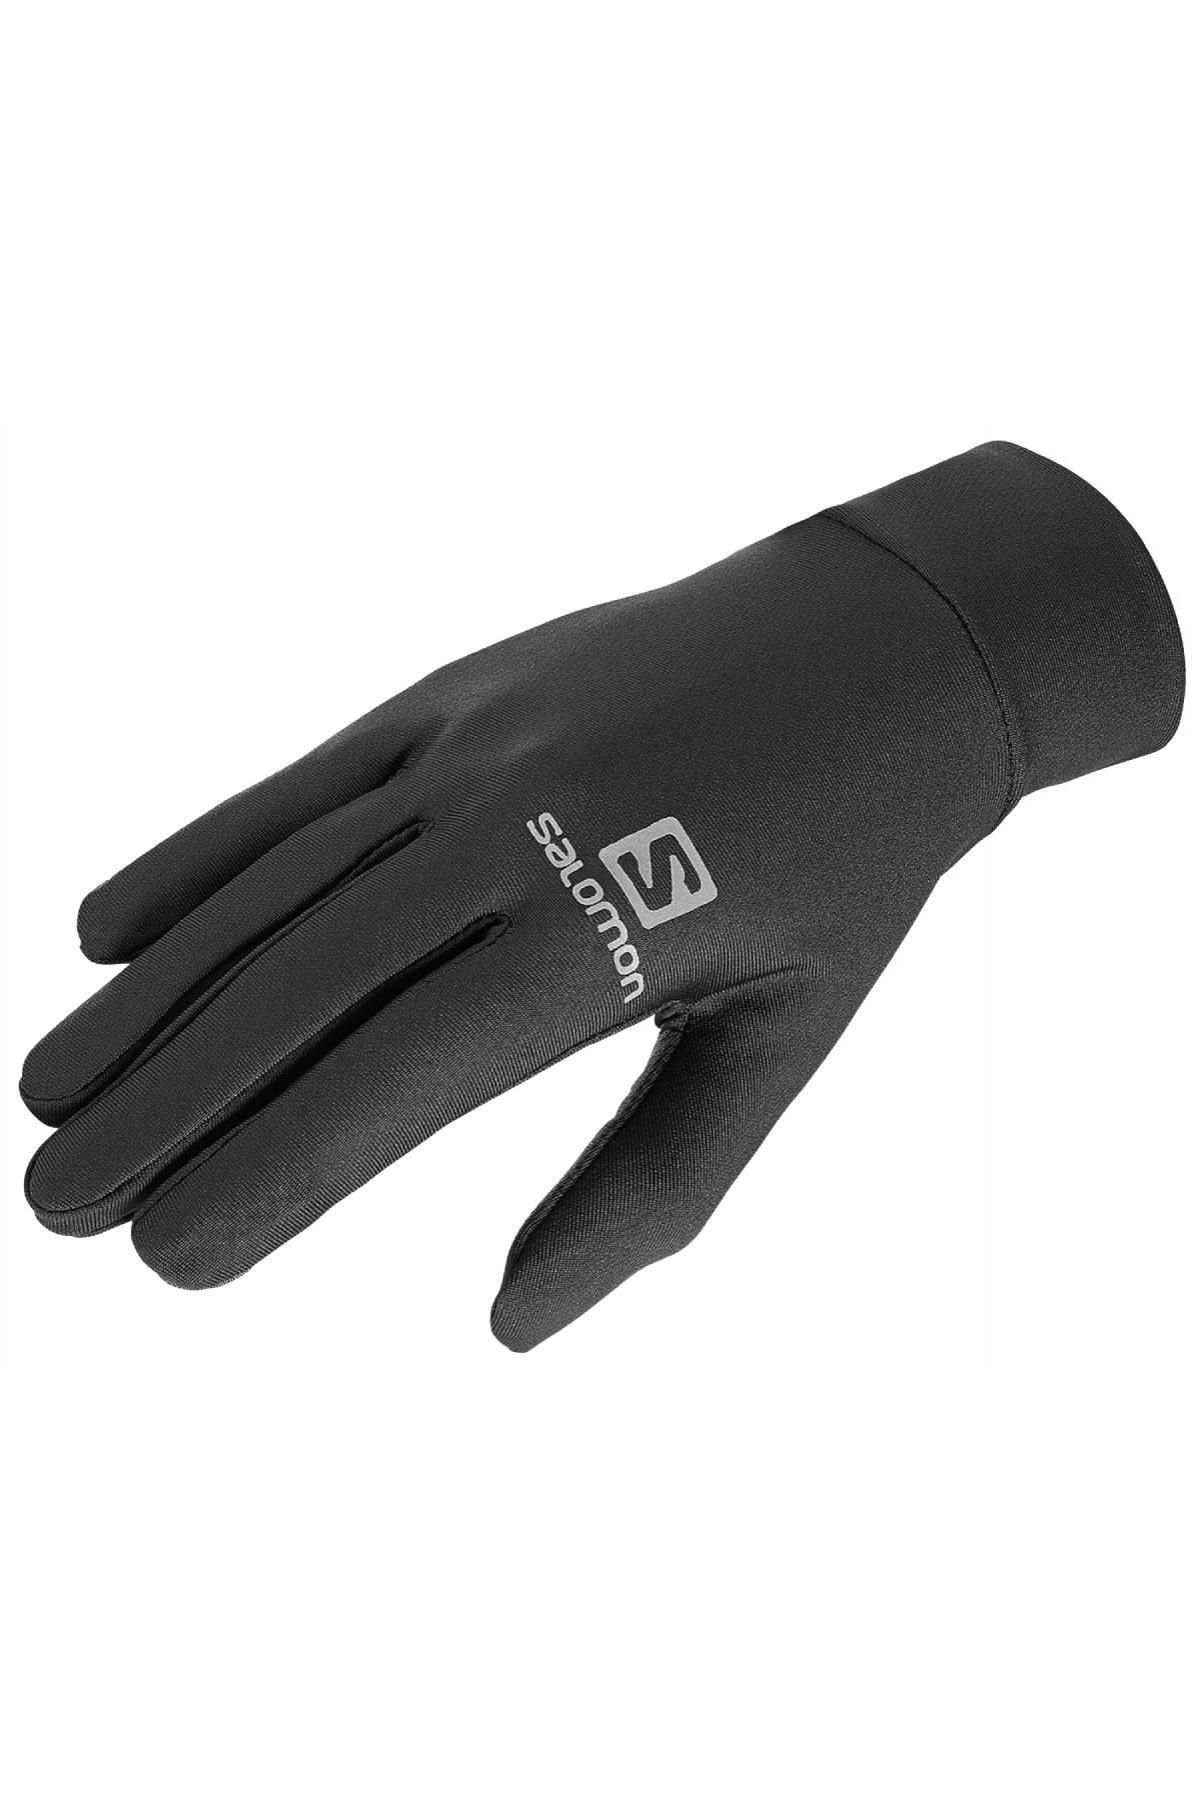 Salomon L390144 Agile Warm Glove U Siyah Unisex Eldiven